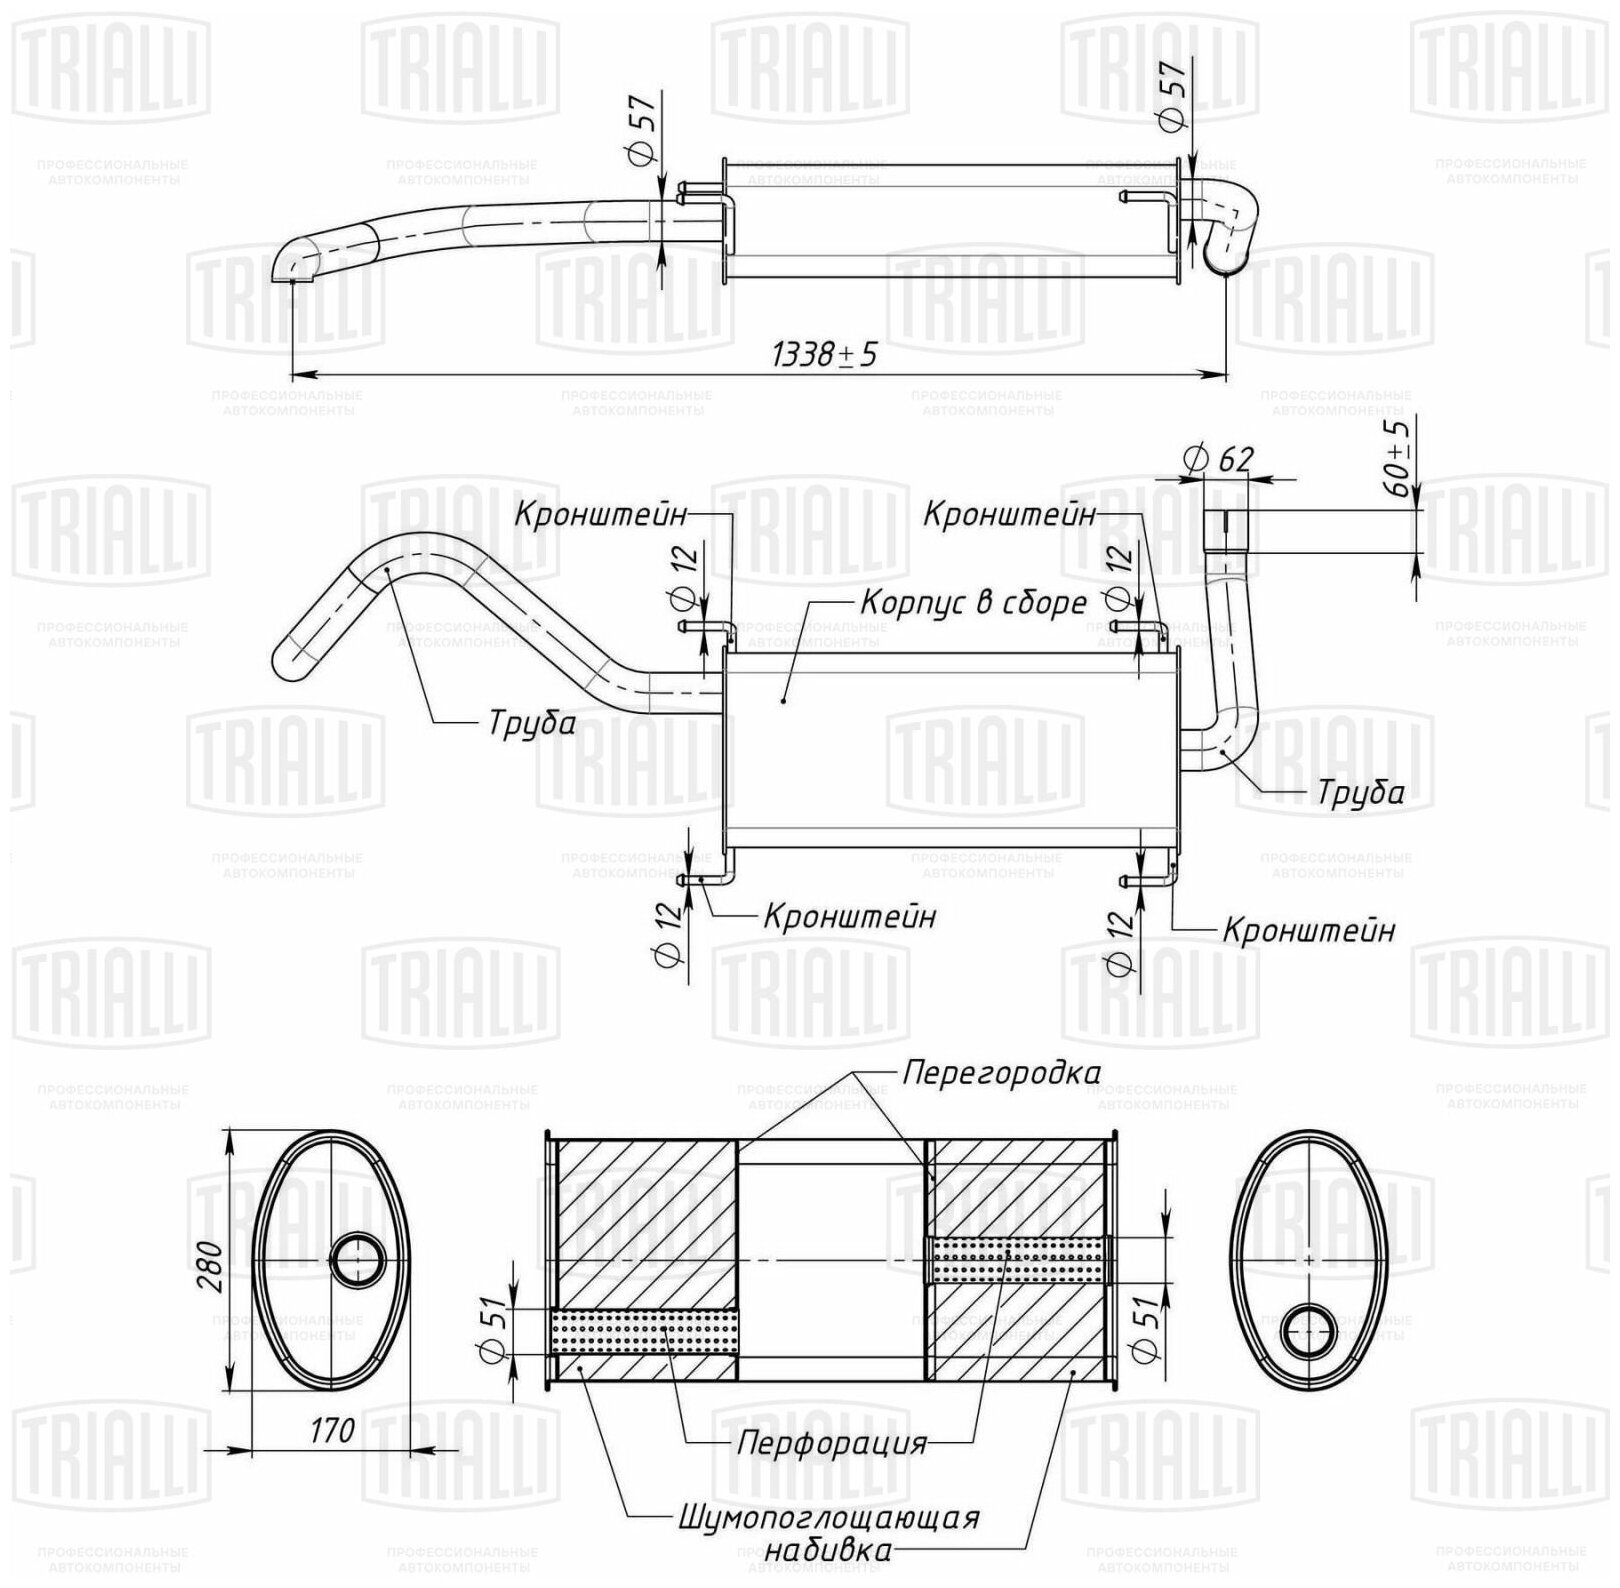 Глушитель для автомобилей Peugeot Boxer (06-)/Citroen Jumper (06-) 2.2d основной (алюм. сталь) (EMM 2613) TRIALLI